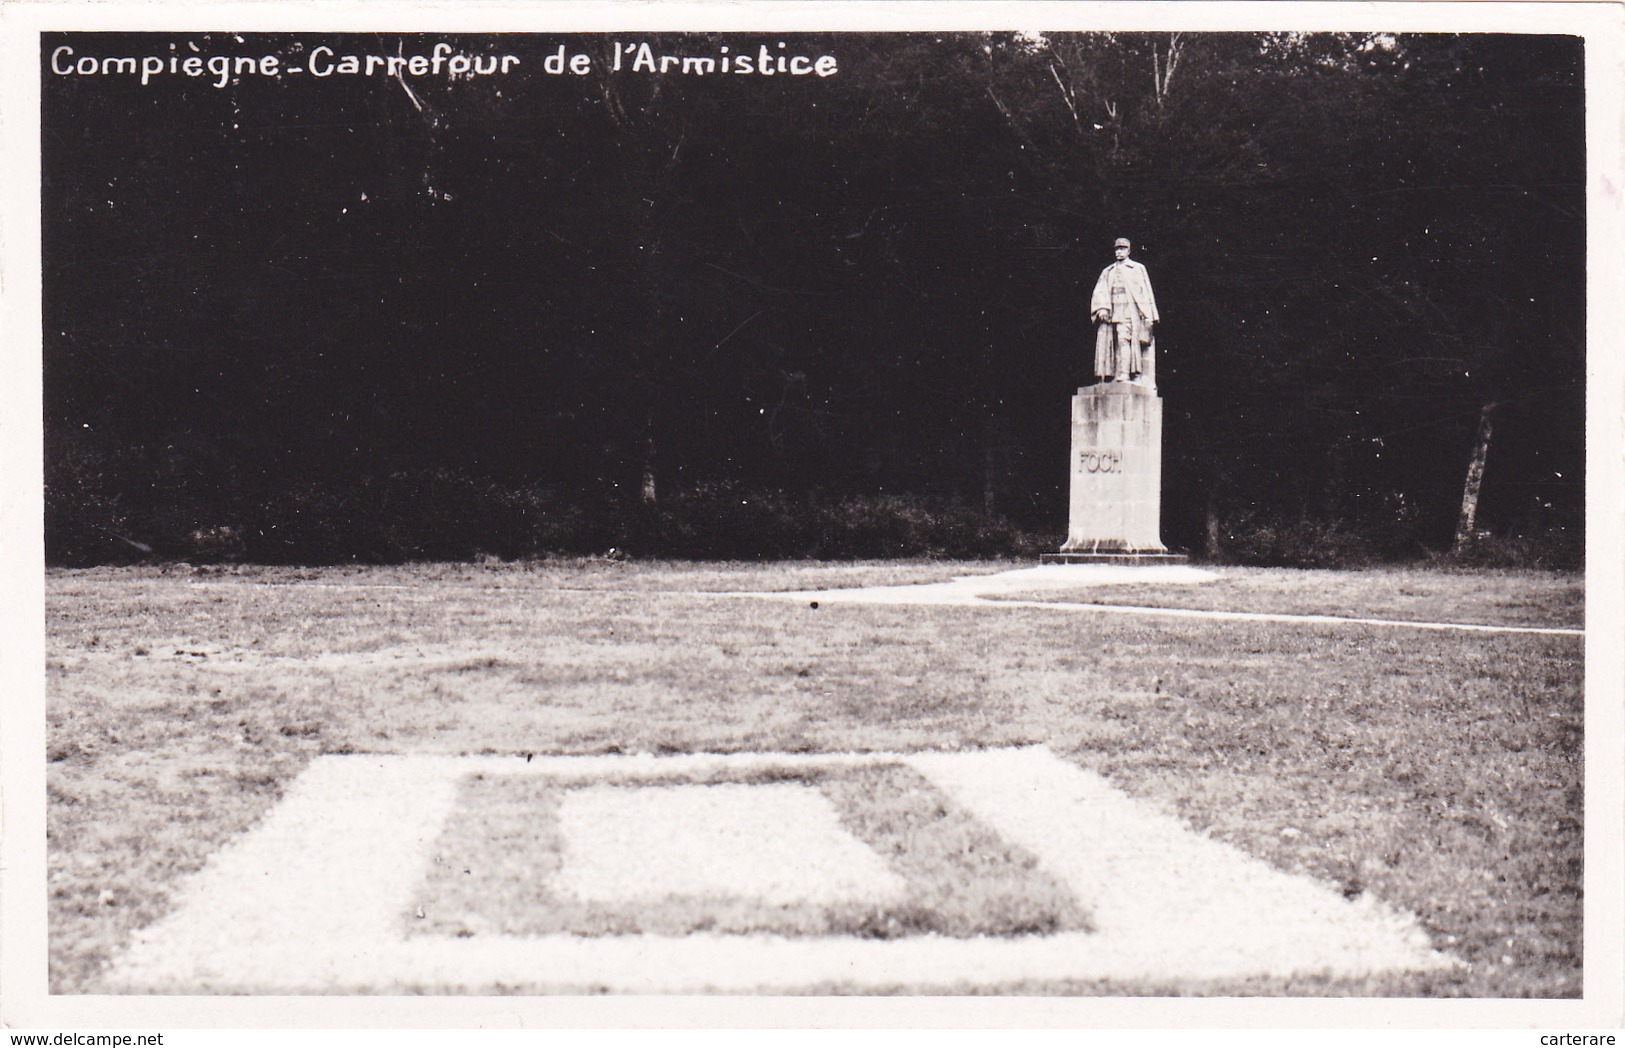 CARTE PHOTO,OISE,COMPIEGNE,FORET DOMANIALE,RETHONDES,LIEU DE SIGNATURE DE L'ARMISTICE,11 Nov 1918,60 - Monumentos A Los Caídos